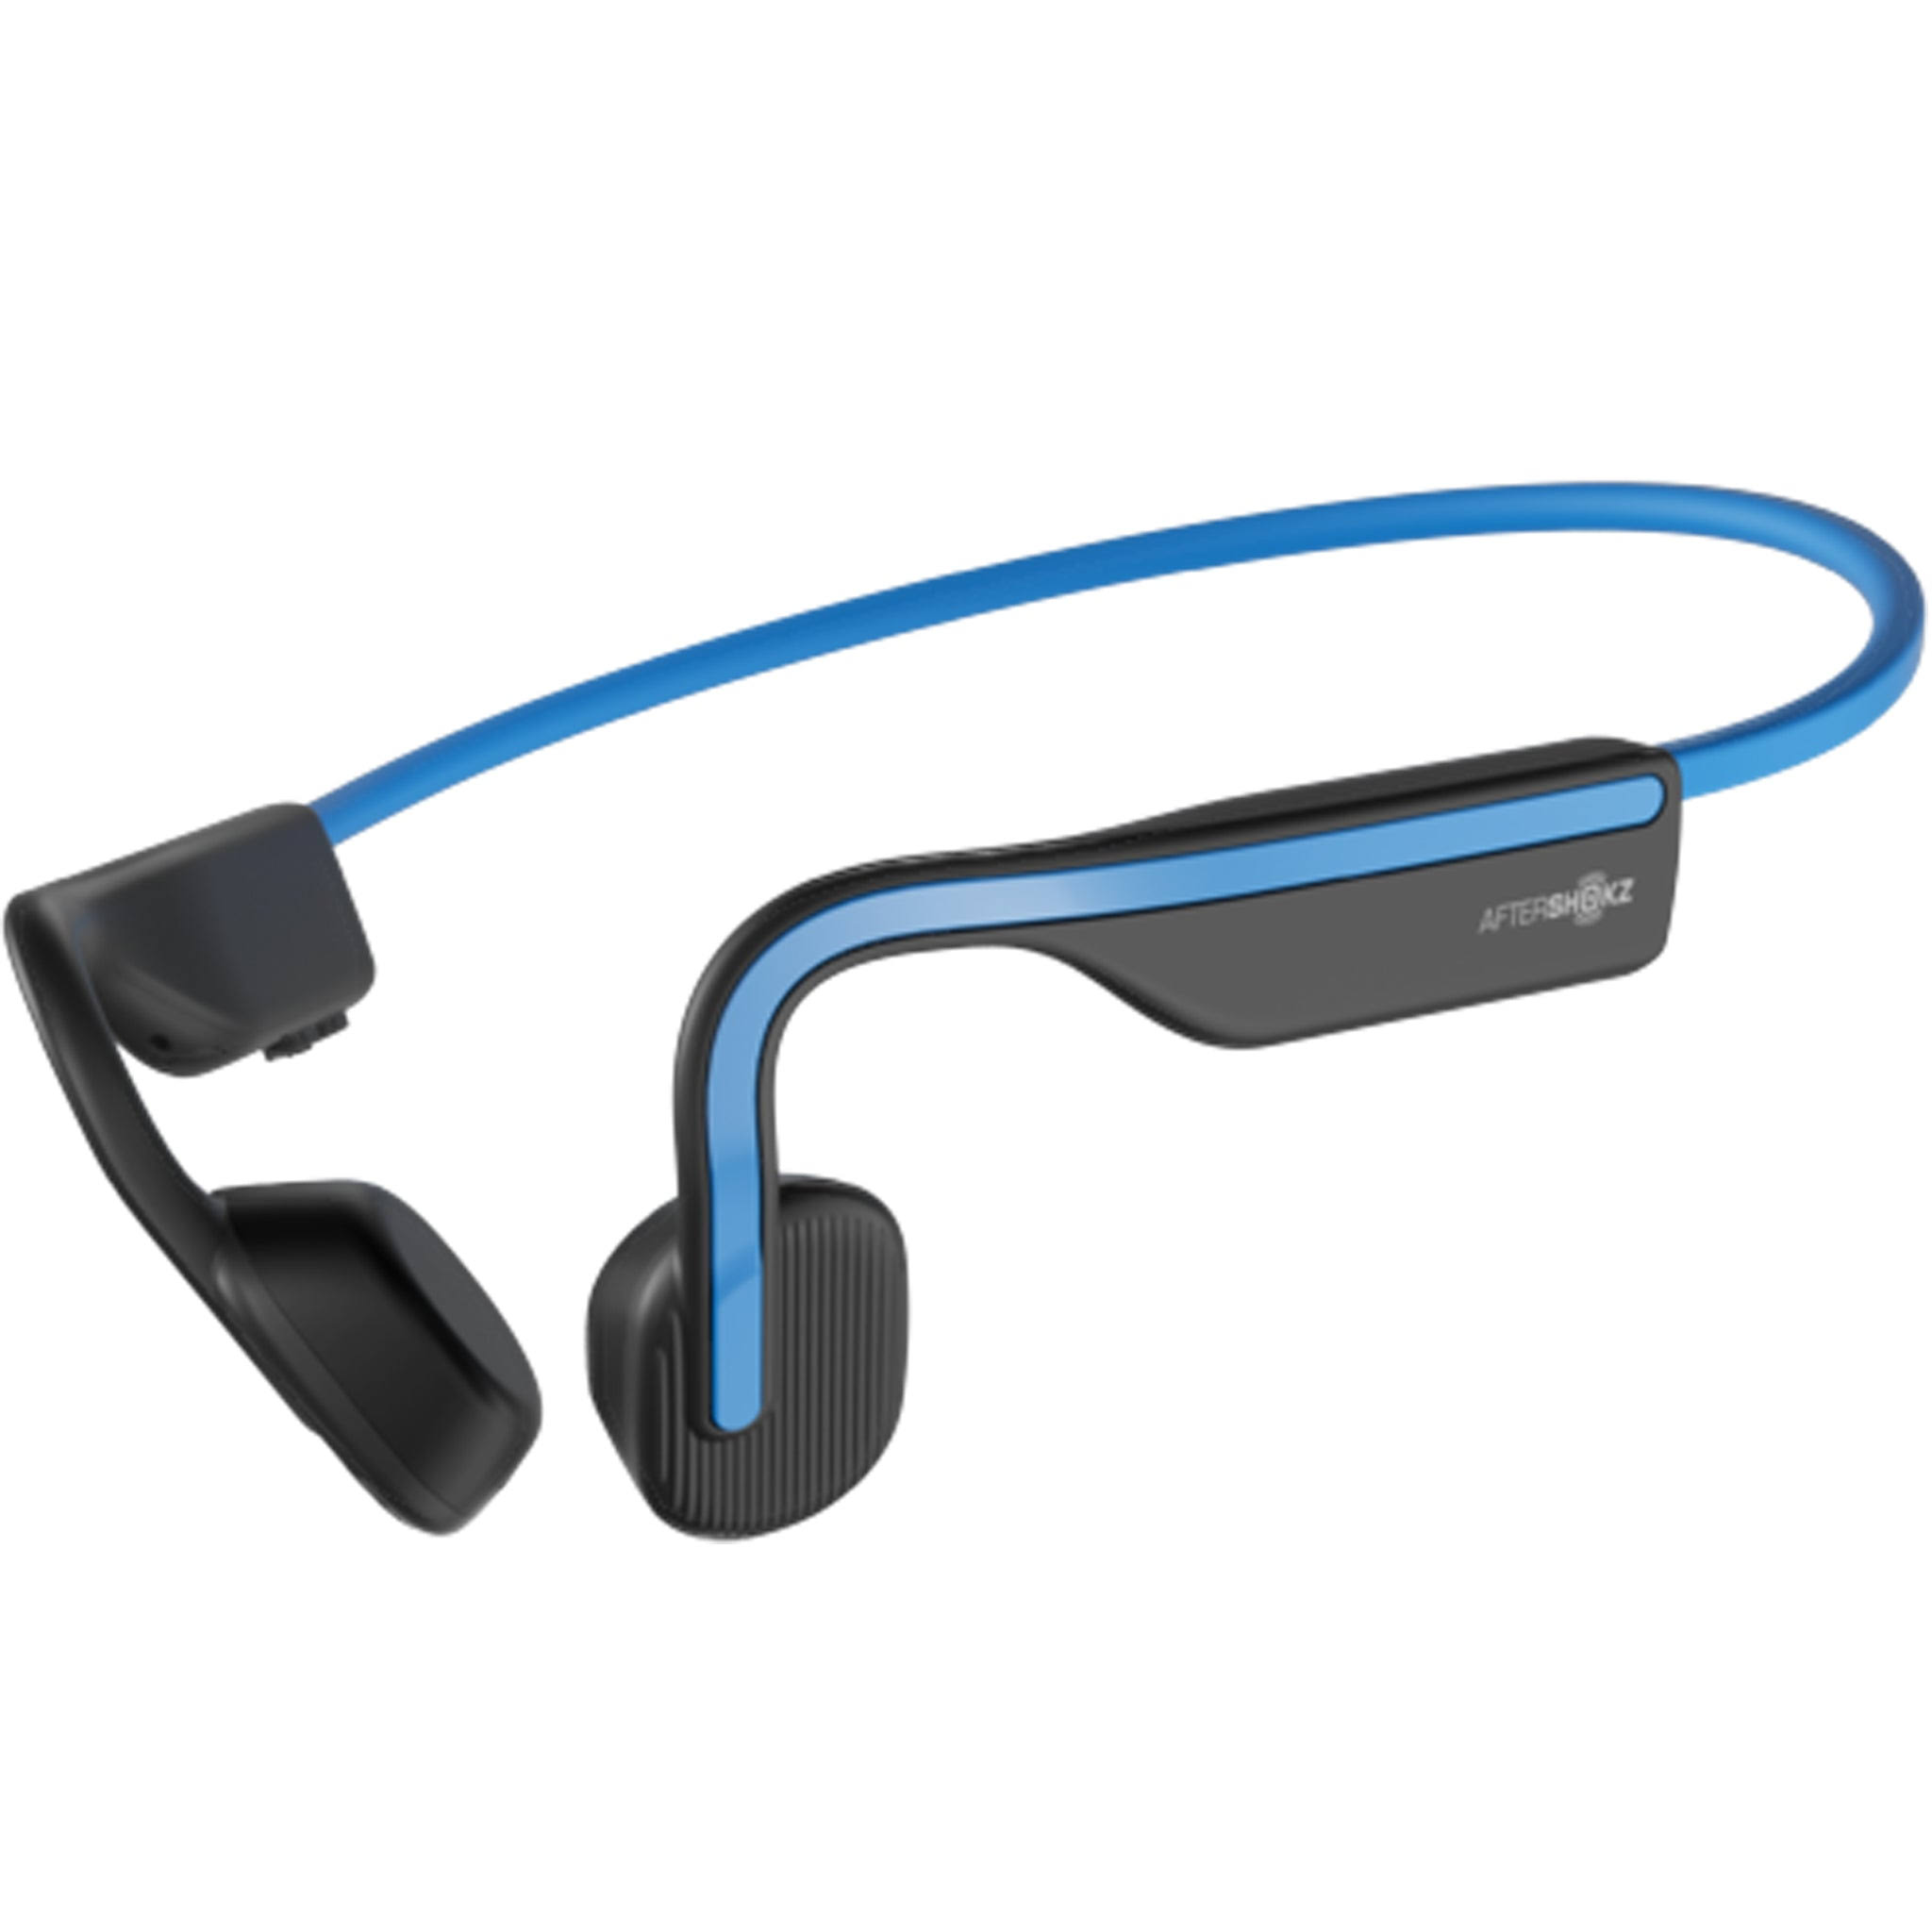 Aftershokz OpenMove Wireless Headphones - Elevation Blue